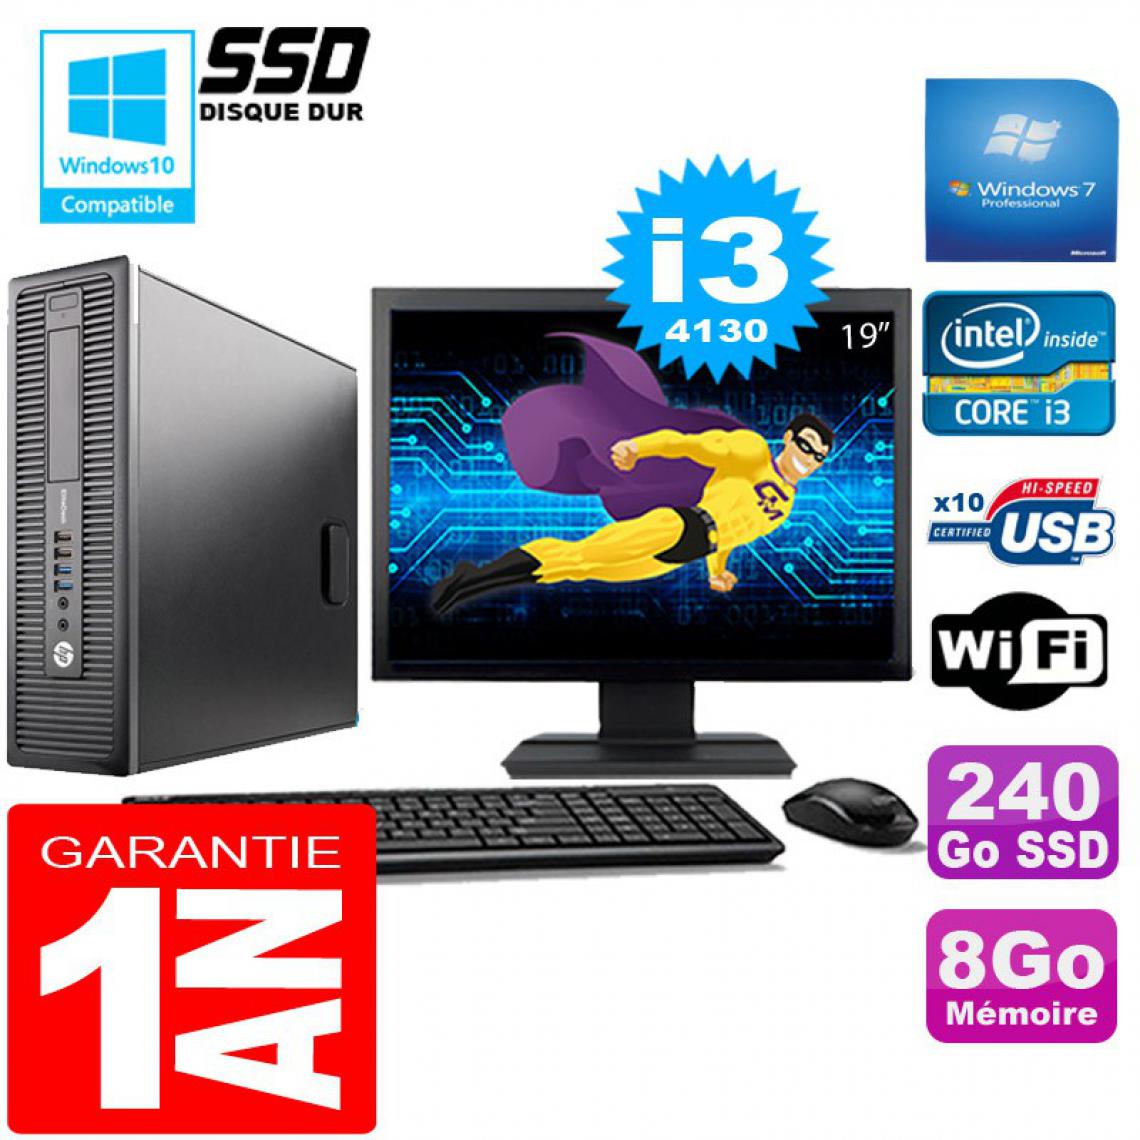 Hp - PC HP EliteDesk 800 G1 SFF Core I3-4130 8Go Disque 240 Go SSD Wifi W7 Ecran 19" - PC Fixe